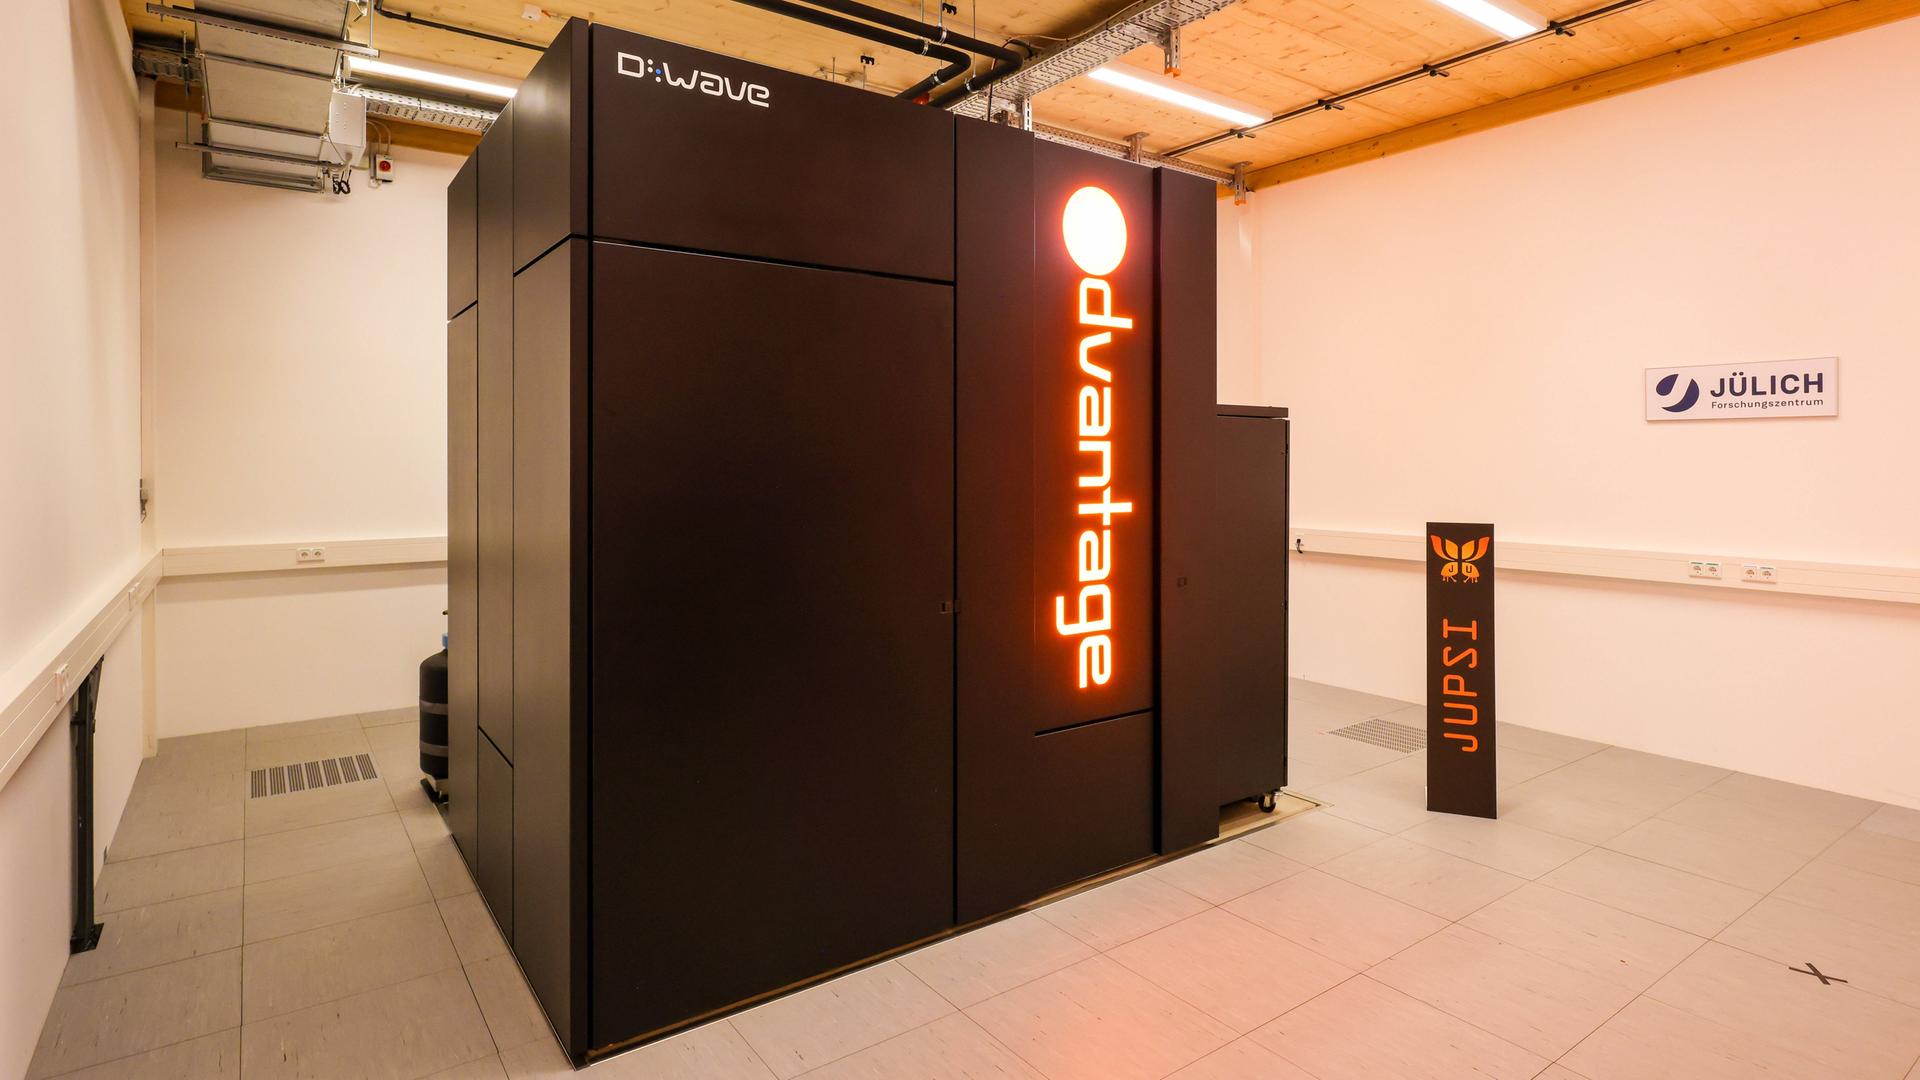 Ein schwarzer Quantencomputer steht in einem Raum mit Holzdecke im Forschungszentrum Jülich. Auf dem Computer steht in roten Leuchtbuchstaben "Advantage", der Name des Rechners.